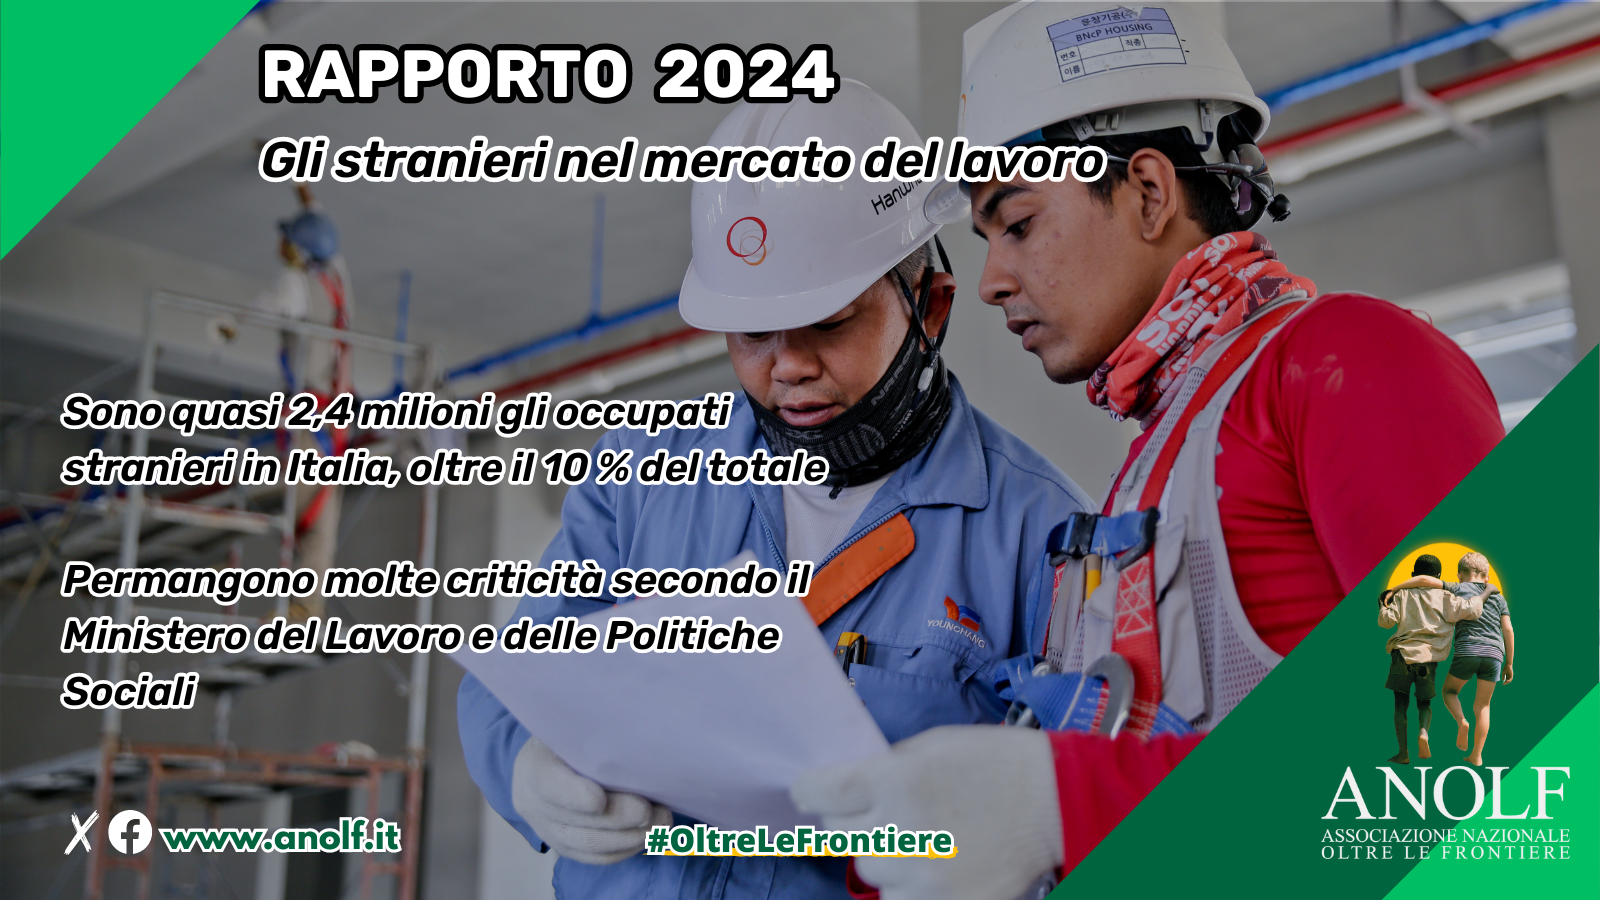 Rapporto 2024 del Ministero del Lavoro “Gli stranieri nel mercato del lavoro”